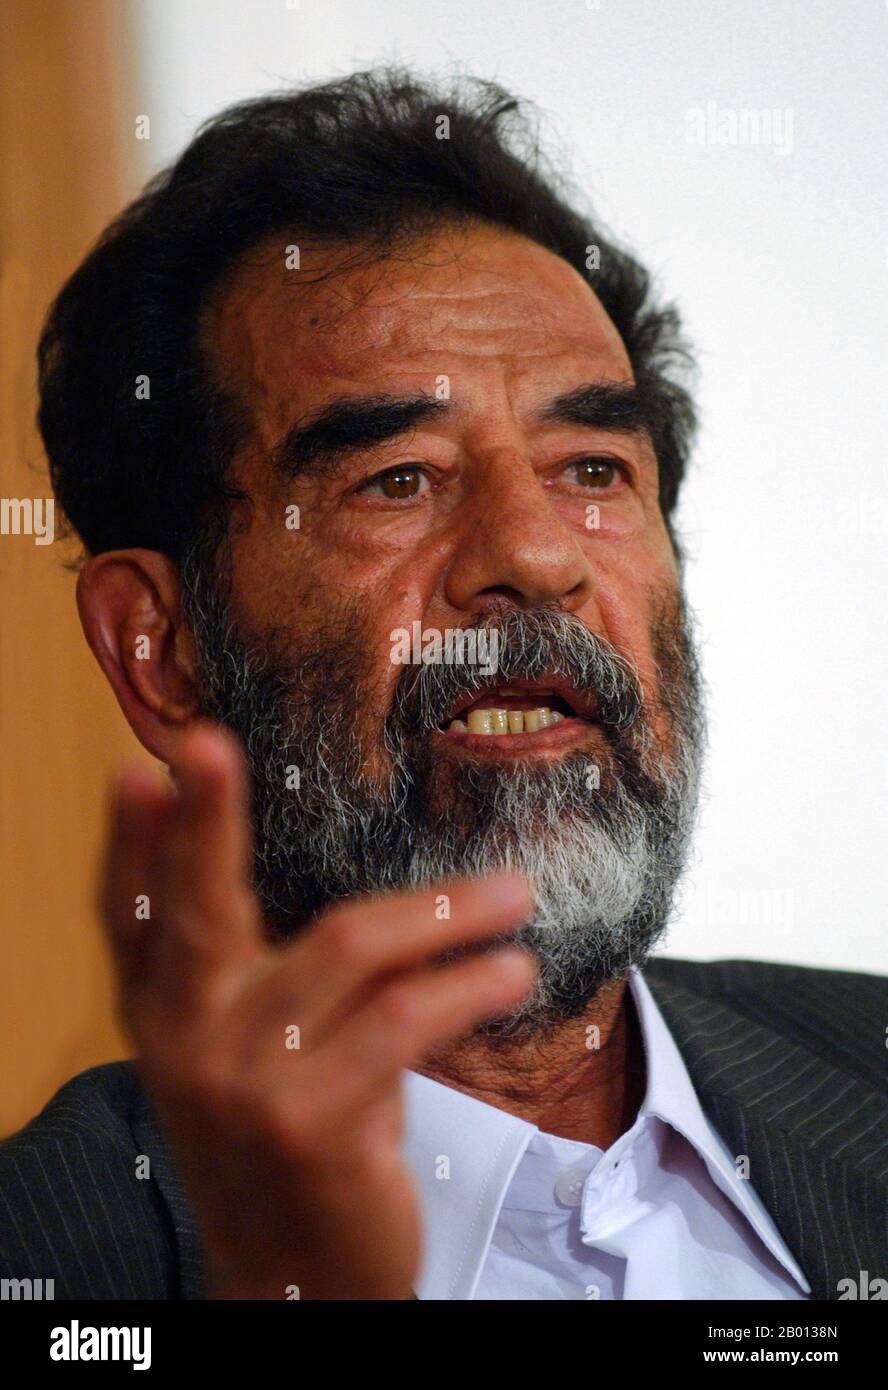 Irak: Saddam Hussein, Président de l'Iraq (r. 1979-2003), prenant la parole à son procès, le 1er juillet 2004. Saddam Hussein Abd al-Majid al-Tikriti (28 avril 1937 – 30 décembre 2006) était le Président de l'Iraq. Membre de premier plan du parti révolutionnaire Ba'ath, qui a épousé un mélange de nationalisme arabe et de socialisme arabe, Saddam a joué un rôle clé dans le coup d'État de 1968 qui a porté le parti au pouvoir à long terme. En tant que président, Saddam a maintenu le pouvoir pendant la guerre Iran-Irak de 1980 à 1988, et tout au long de la guerre du Golfe persique de 1991. Il a été déposé en 2003 par les États-Unis et exécuté le 30 décembre 2006. Banque D'Images